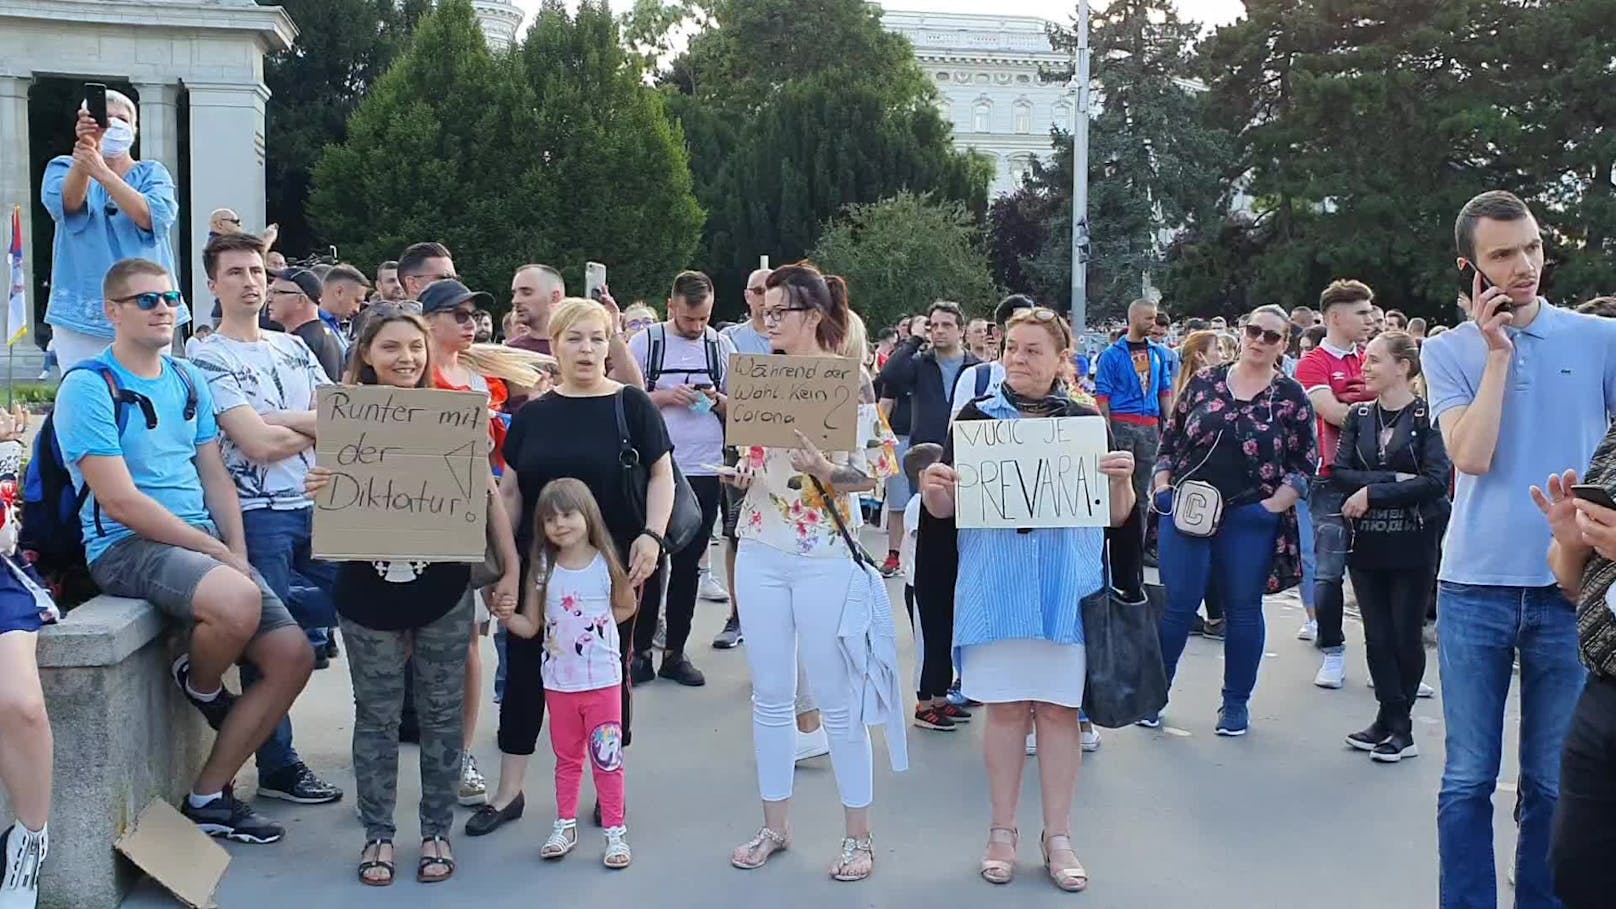 Am Schwarzenbergplatz demonstrieren mehrere Hundert gegen die derzeitige Polizeigewalt und Zensur am Balkan.